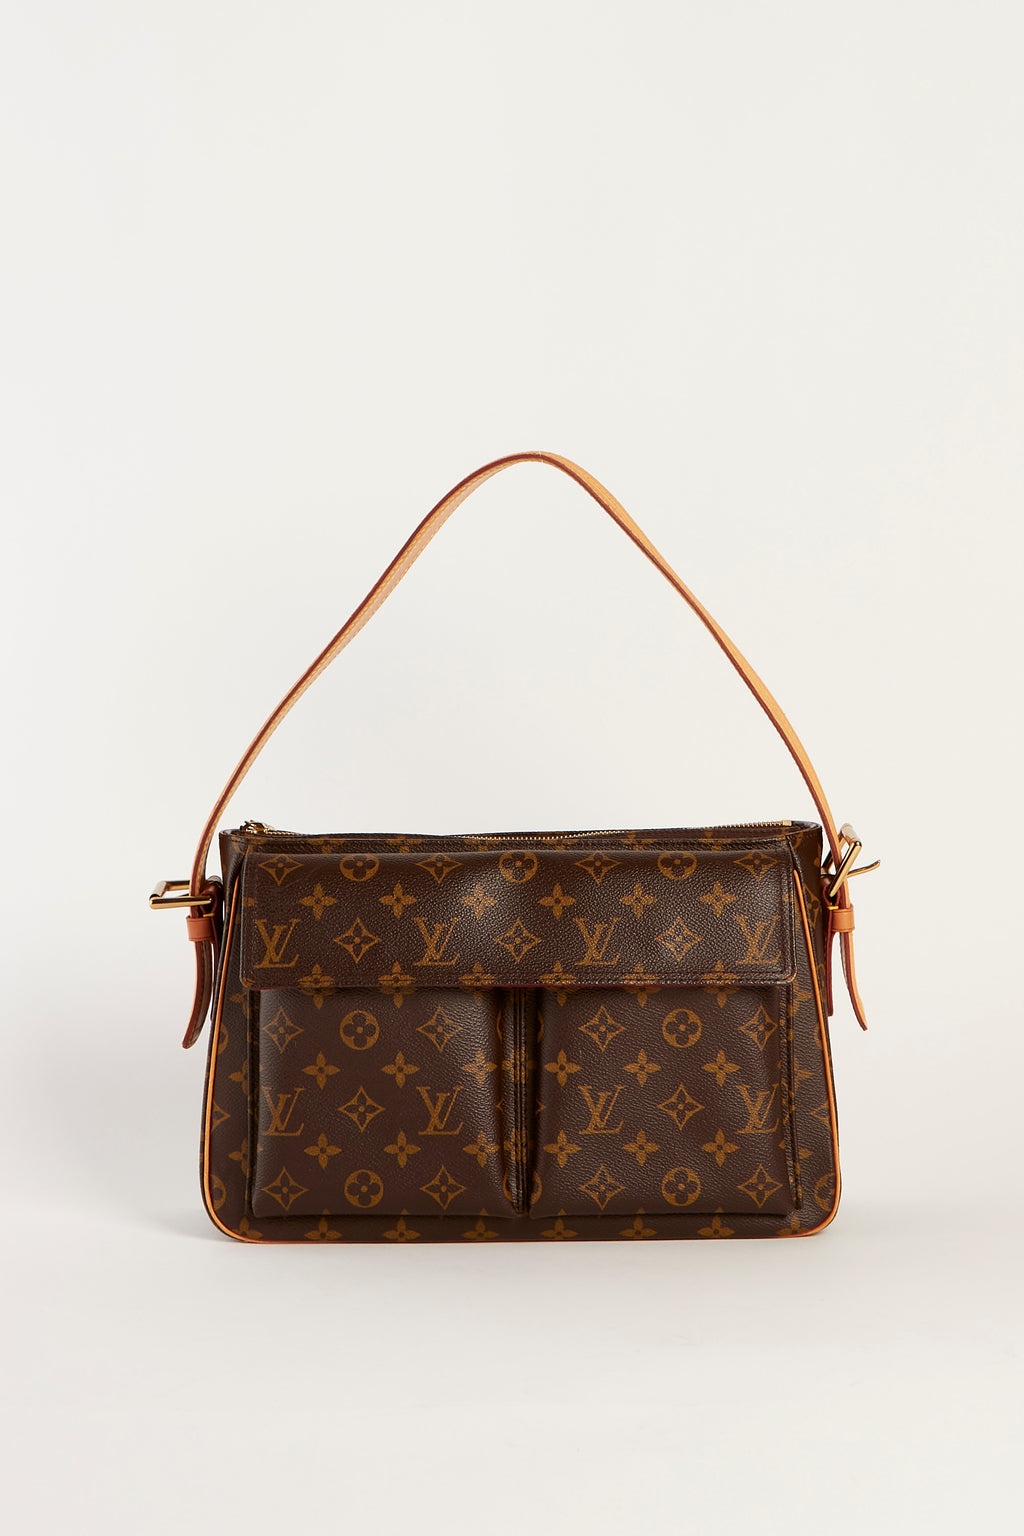 RARE Louis Vuitton Viva Cite GM Shoulder Bag